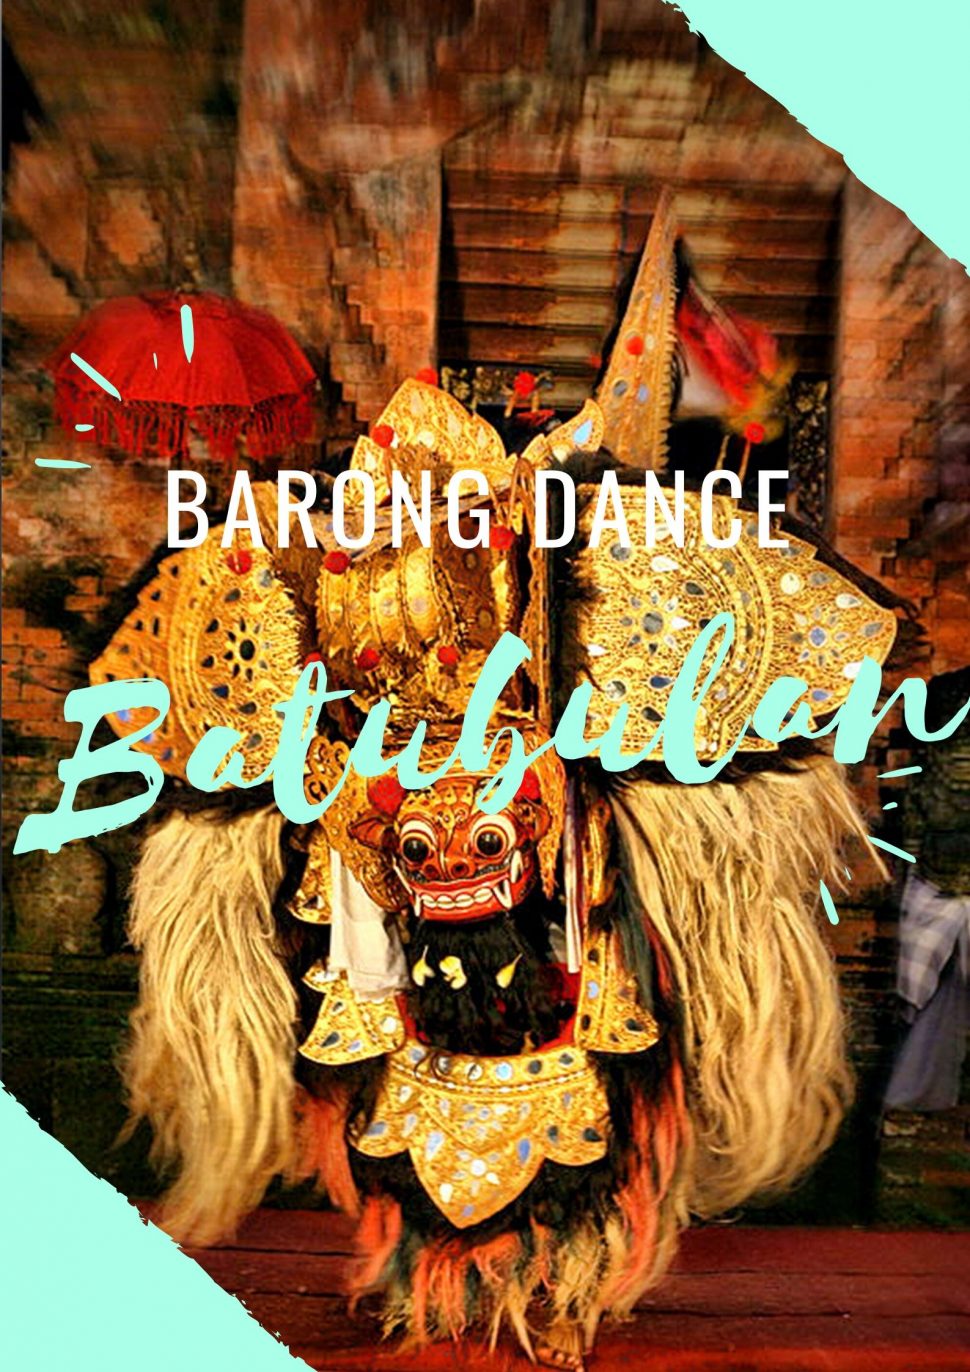 Barong And Keris Dance Performances Of Batubulan Bali